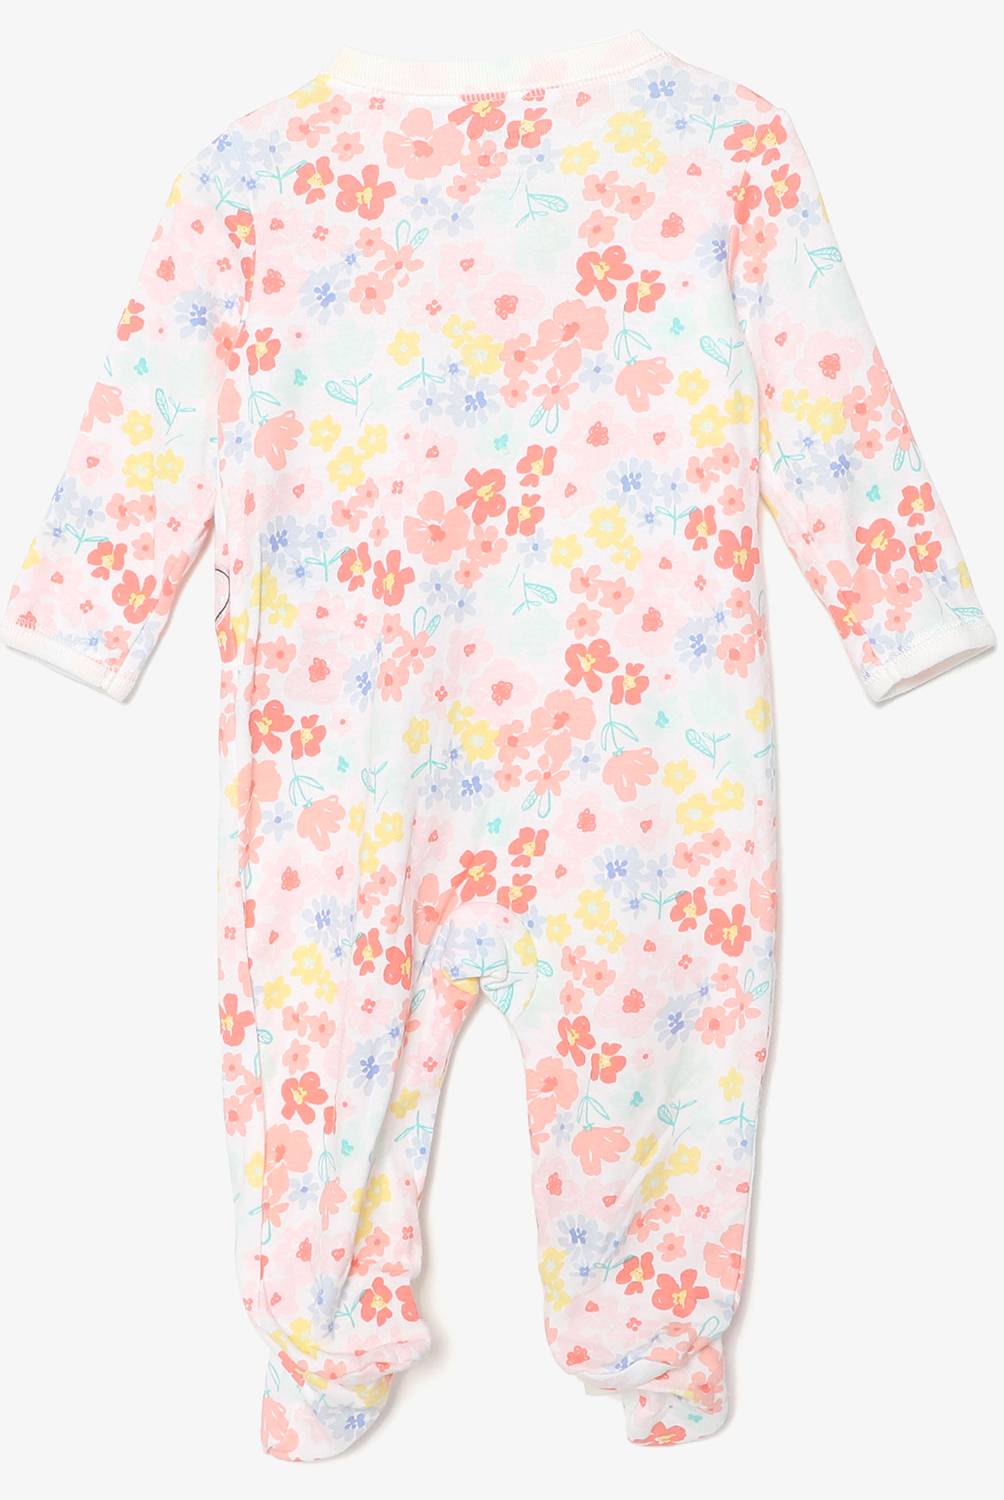 CARTER'S - Pijama Algodón Bebé niña